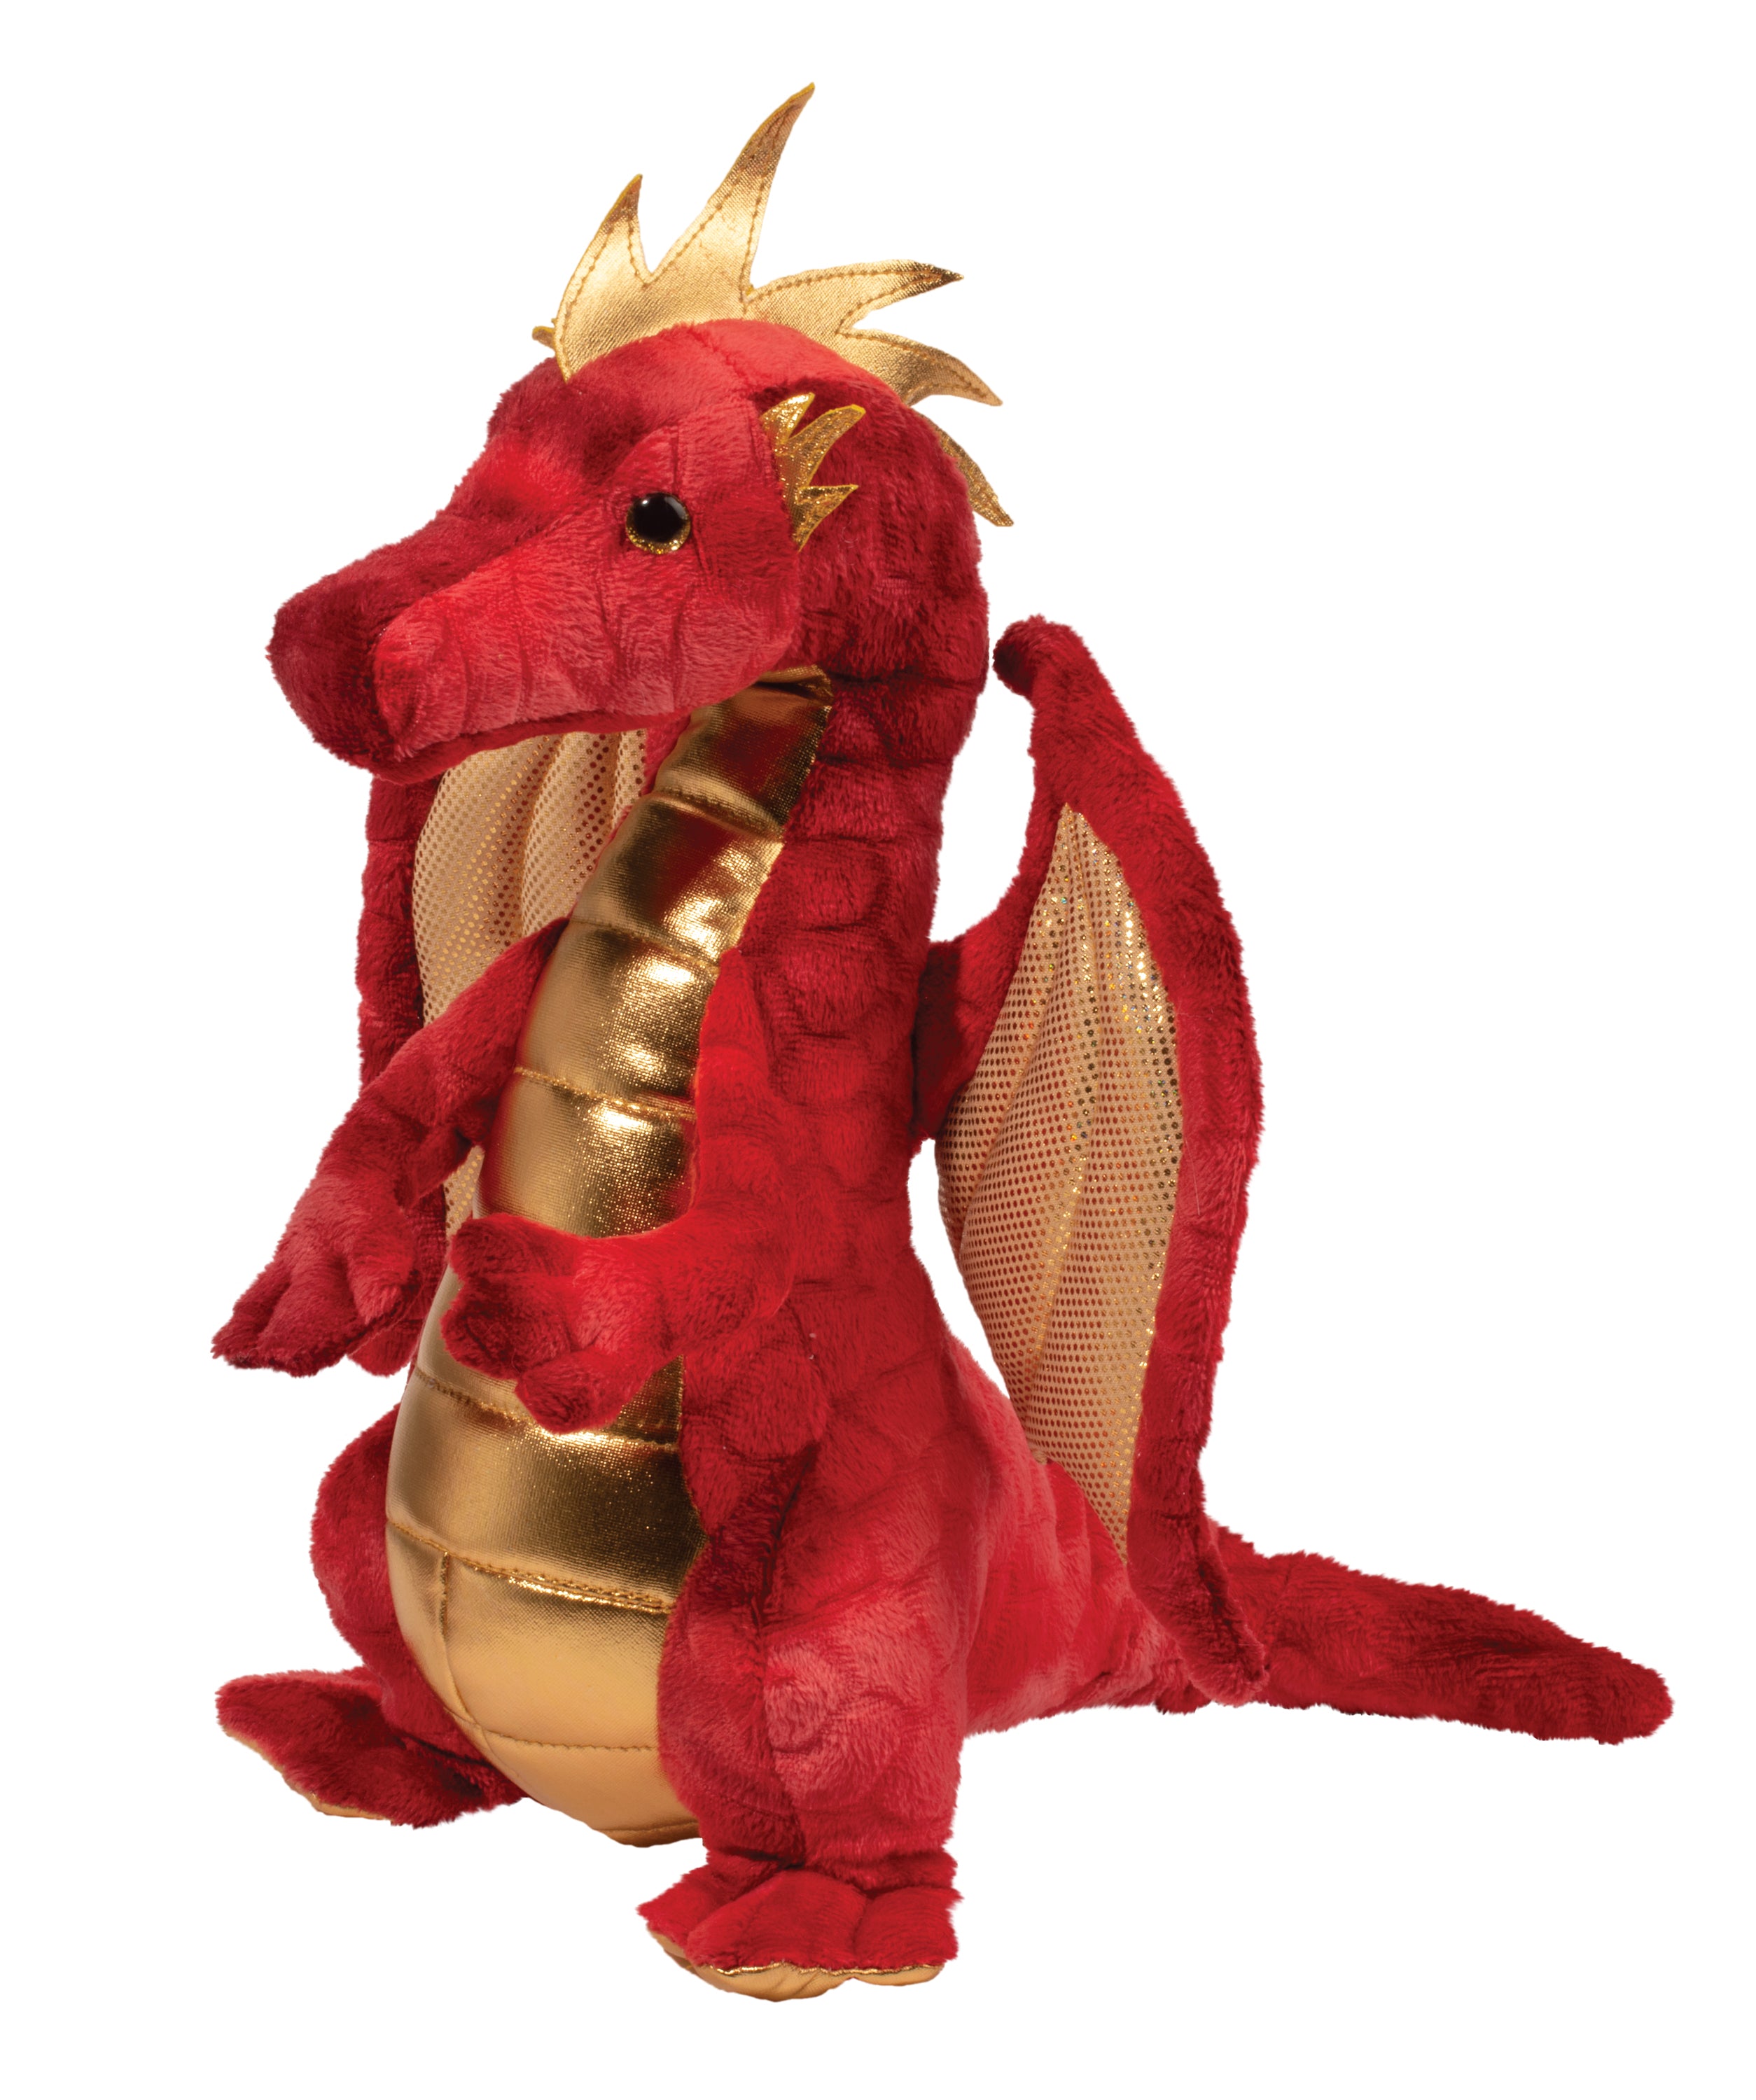 Eugene Red Dragon